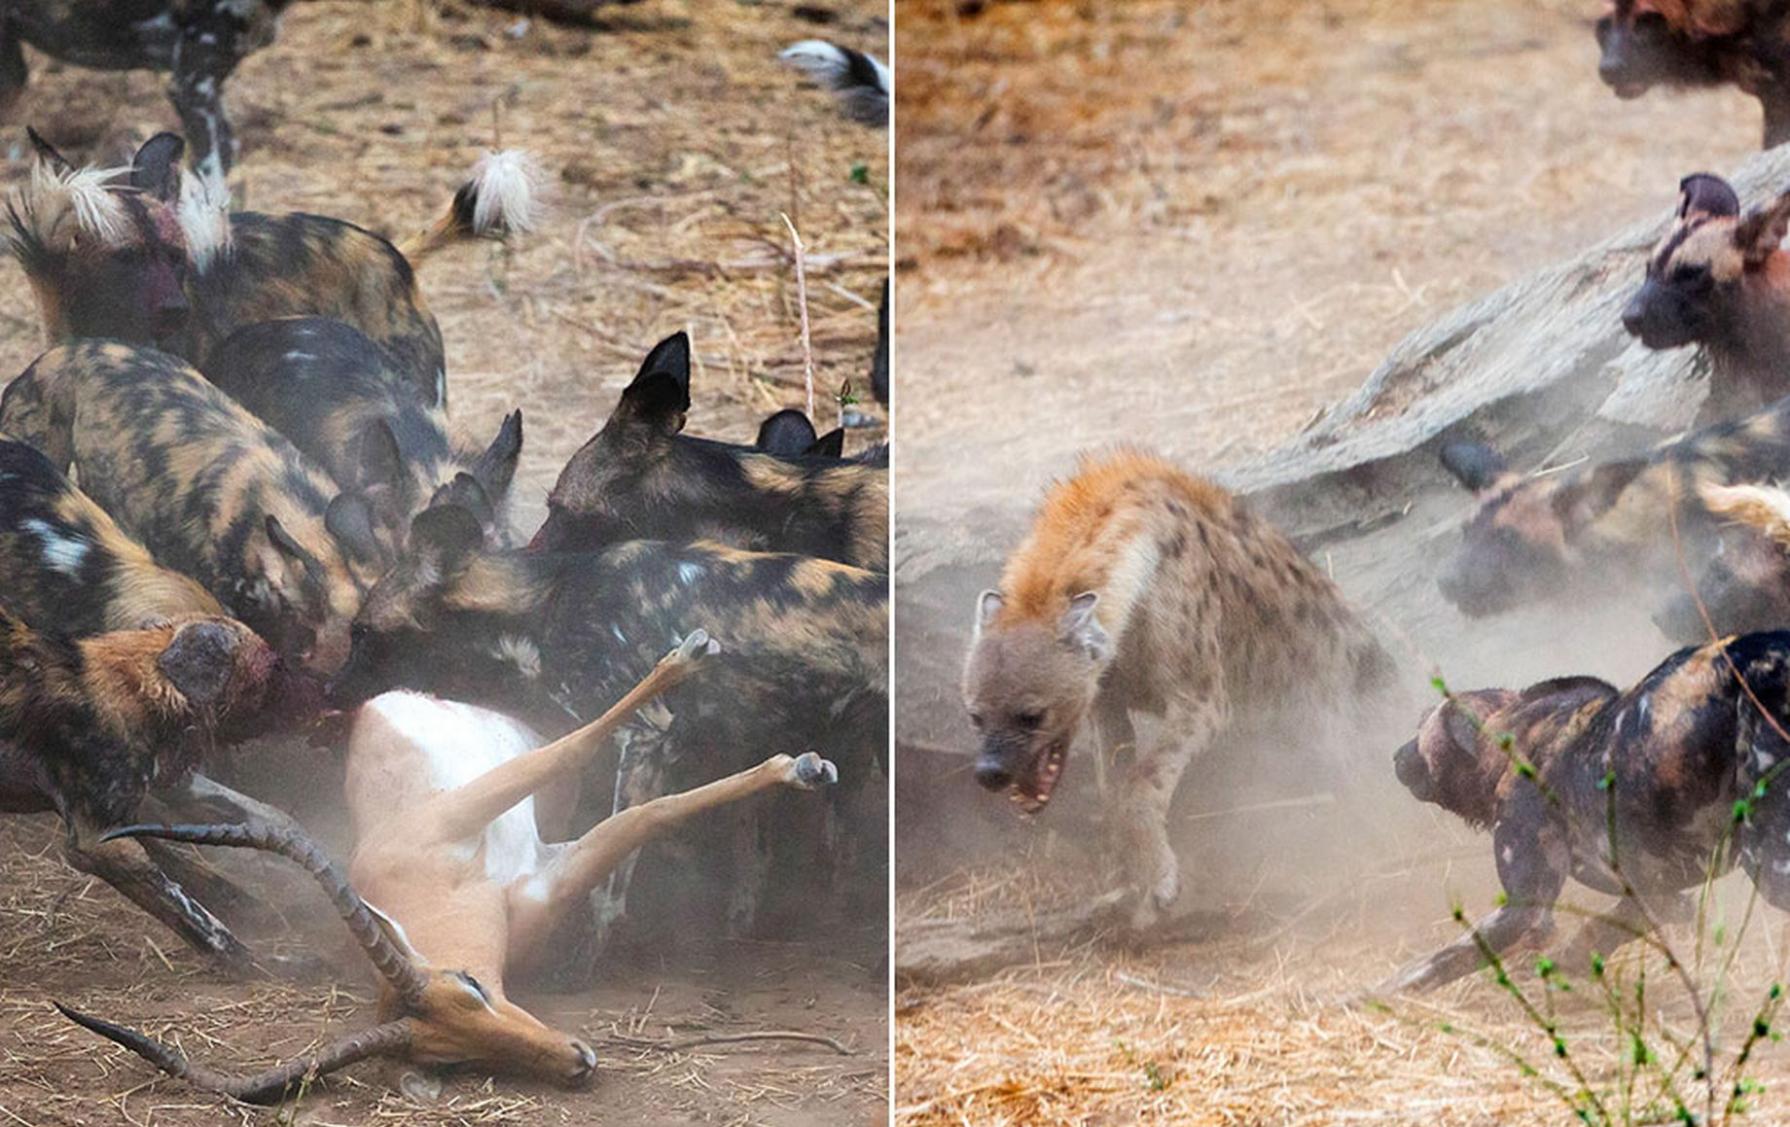 津巴布韦的马纳潭国家森林公园一群野狗和土狼群的晚餐争夺战